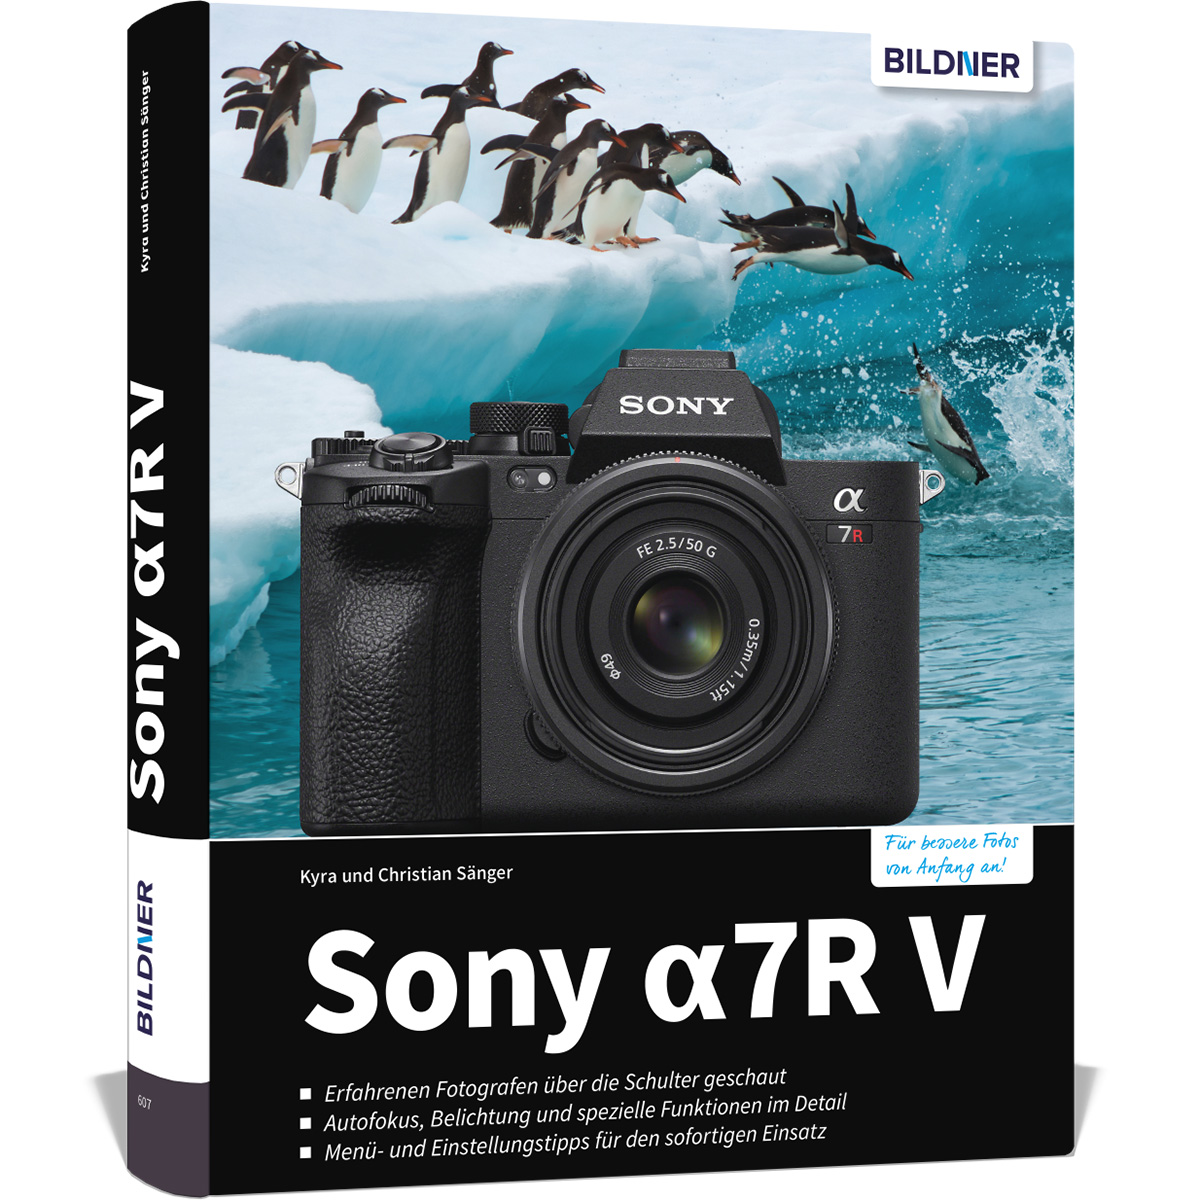 Das alpha V - zu Praxisbuch Kamera 7R Sony umfangreiche Ihrer